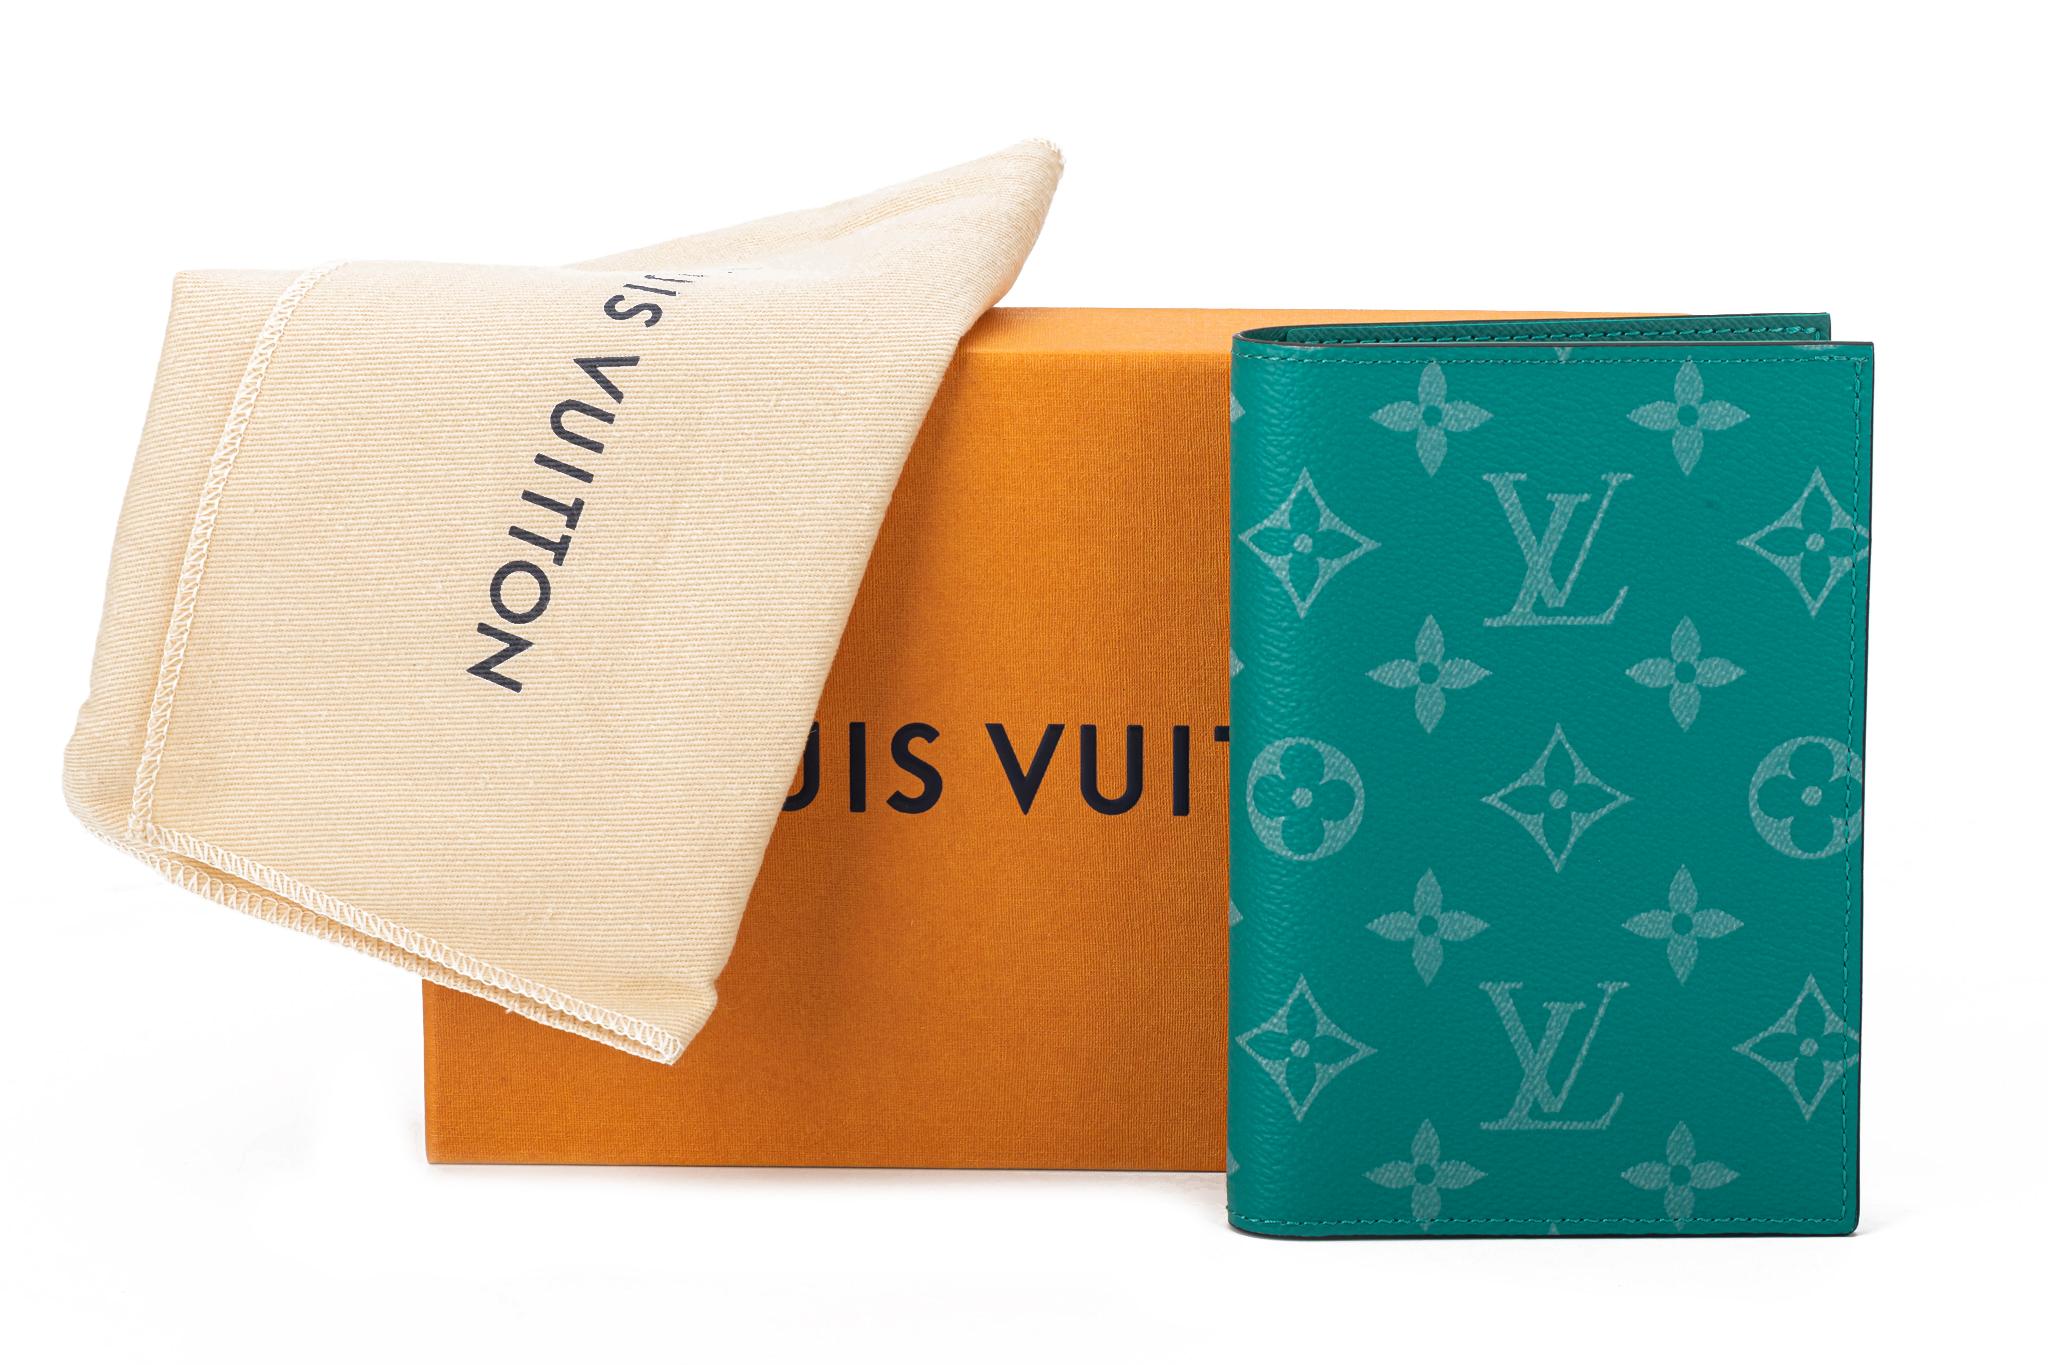 Louis Vuitton Pocket Organizer Monogram Amazon Taiga Pine Green. L'organiseur de poche se présente dans un cuir Taïga coloré et une toile Monogram assortie de la collection printemps-été 2019.